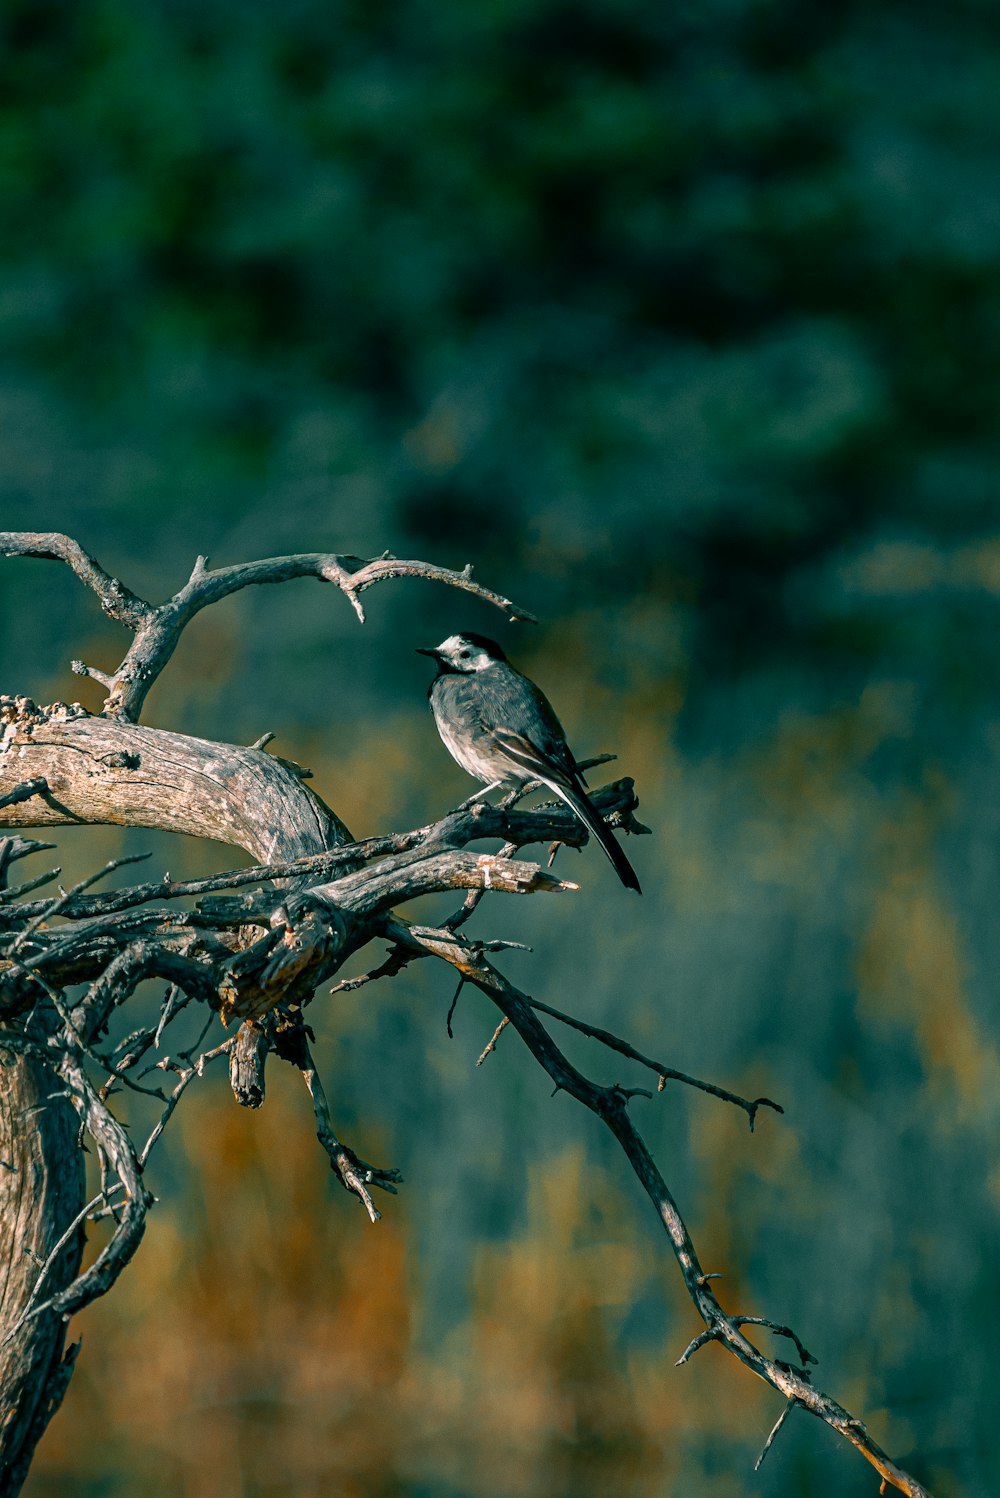 나뭇가지 위에 앉아 있는 두 마리의 새